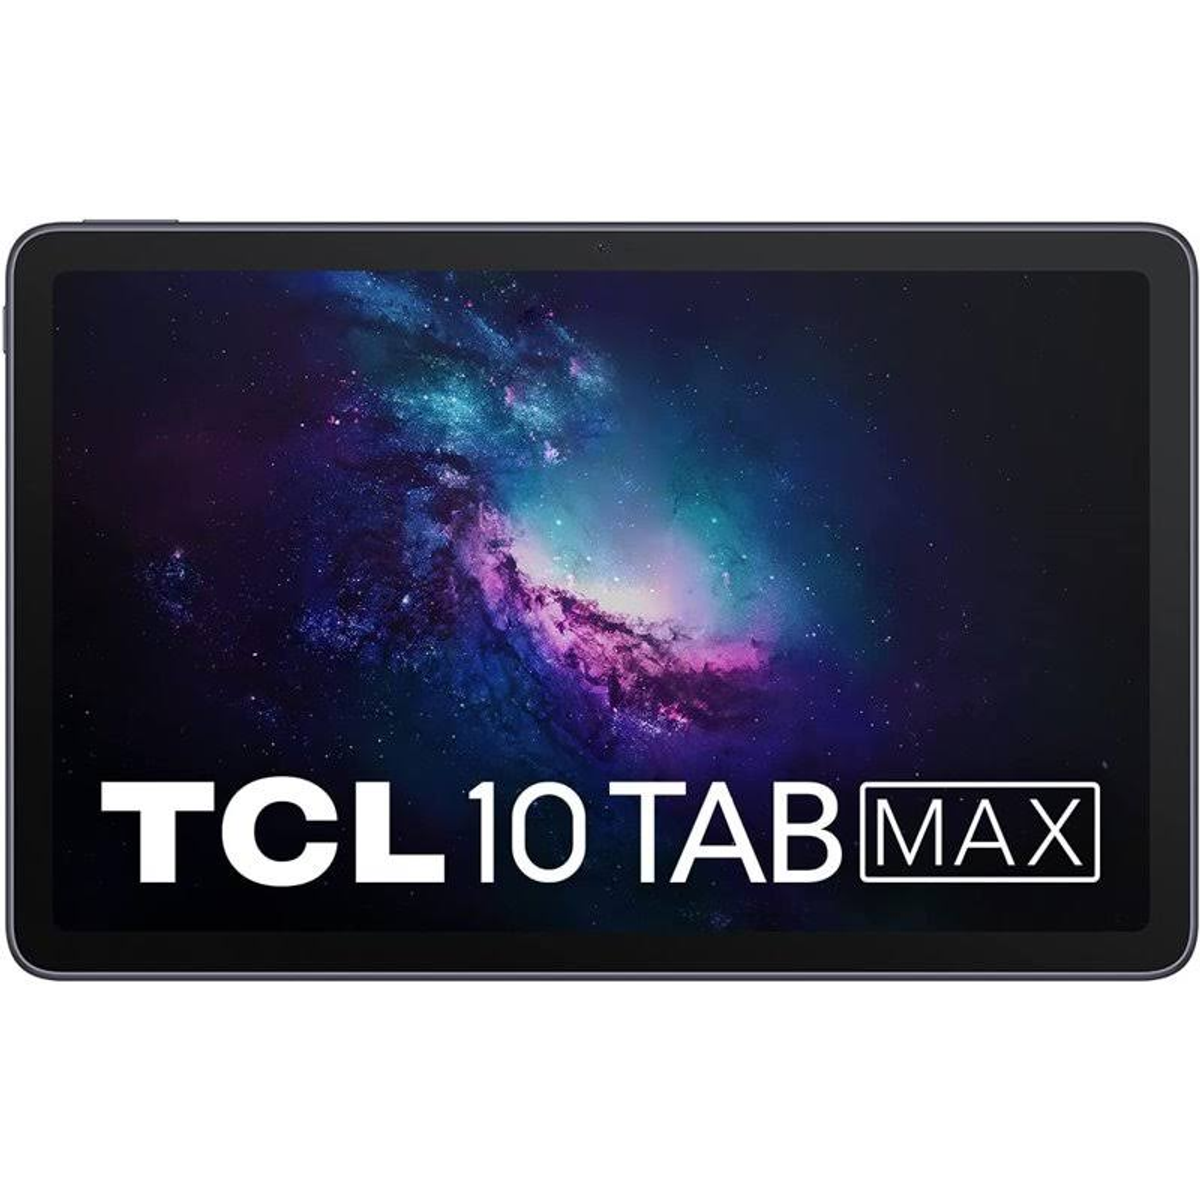 TCL 9295G-2DLCWE11, Tablet, 64 GB, Zoll, Grau 10,3